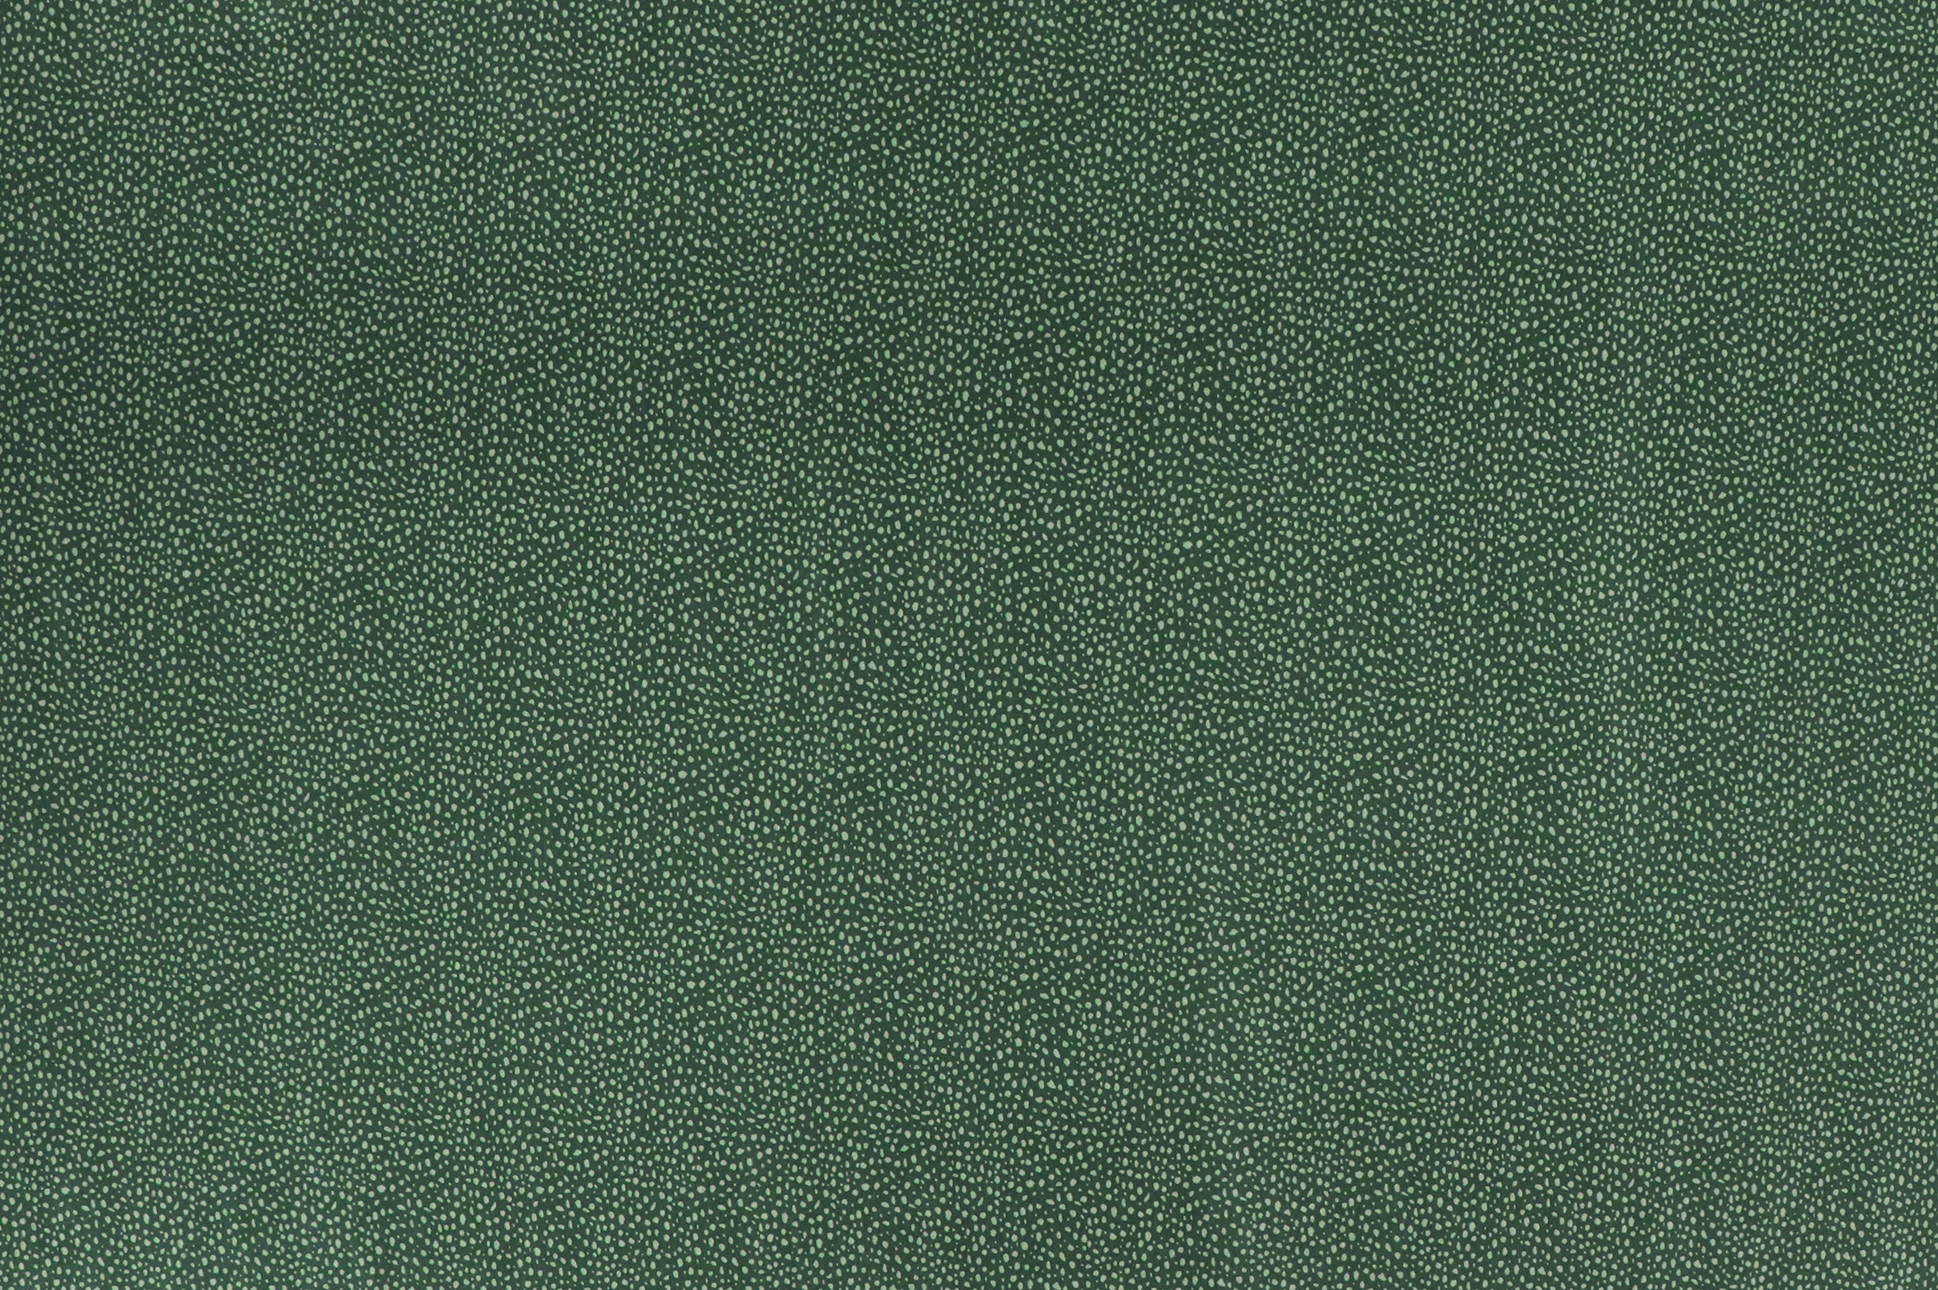 Jersey di cotone, macchie chiare su verde